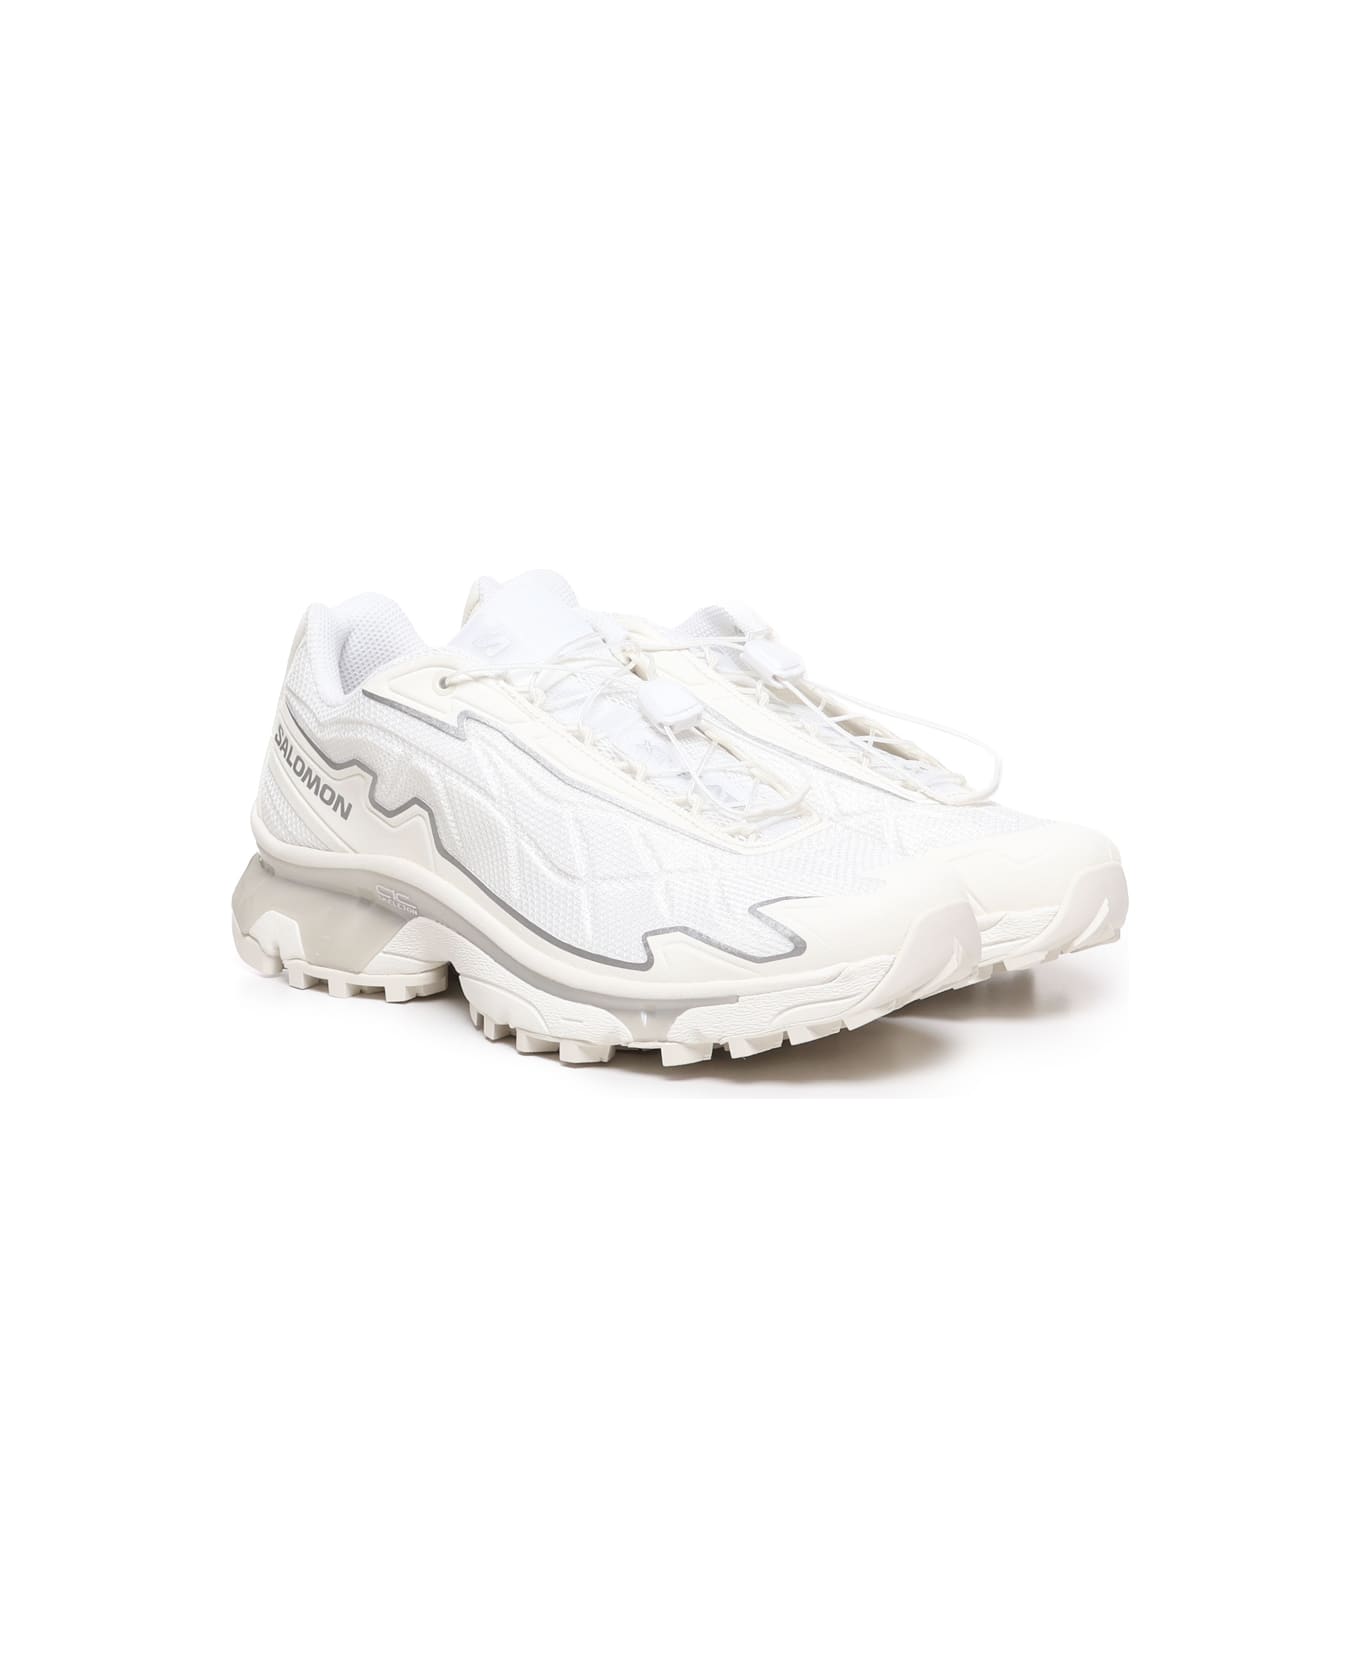 Salomon Xt-slate Sneakers - White スニーカー